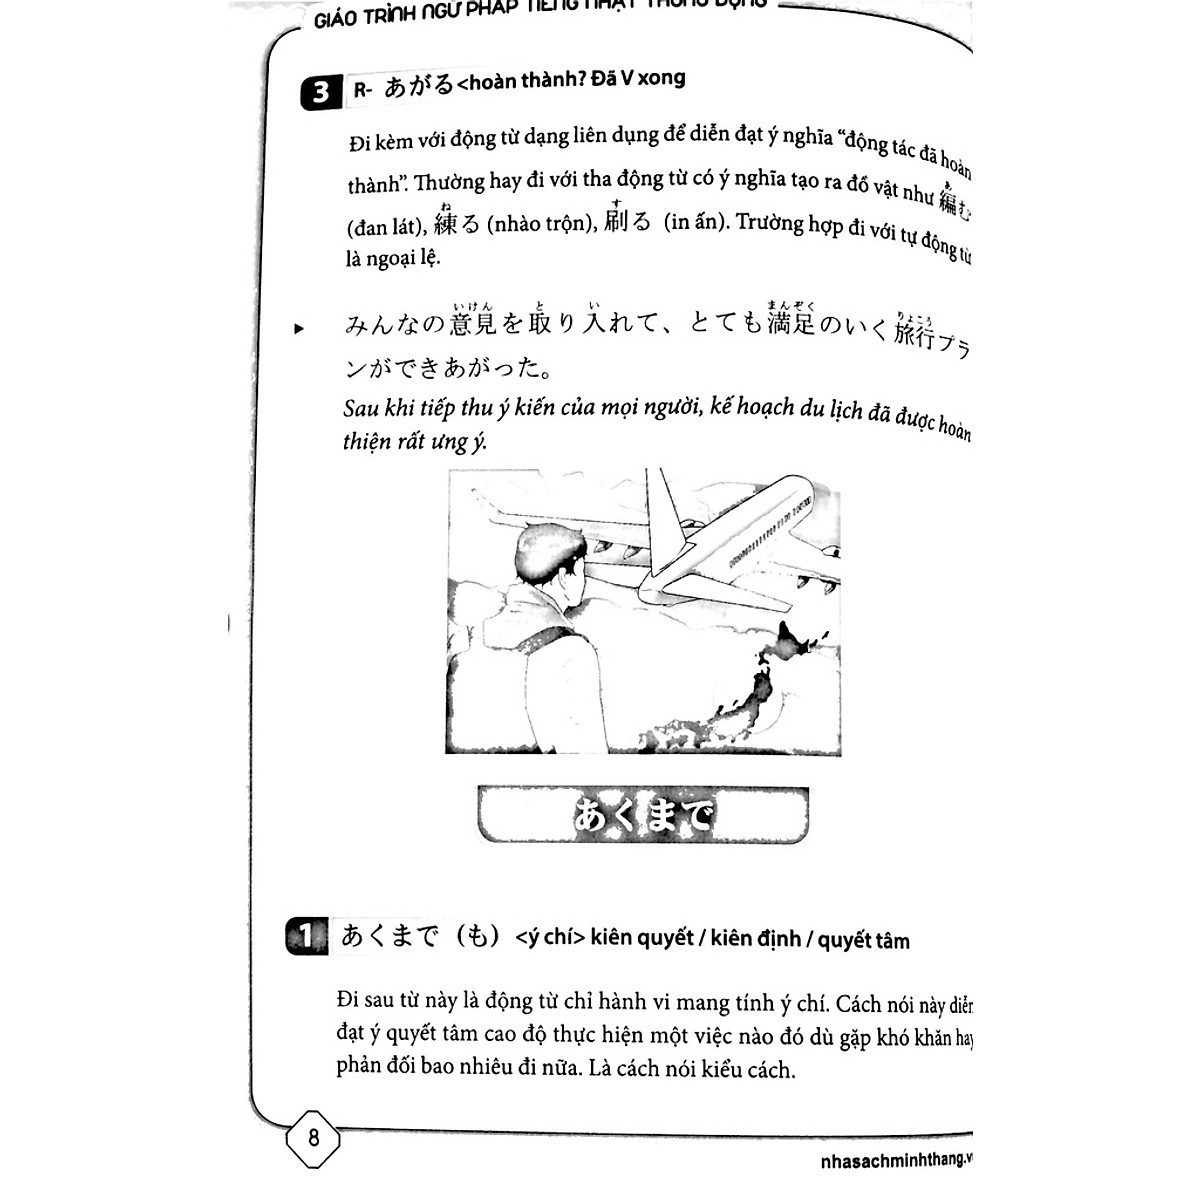 Sách - Hikari - Giáo trình ngữ pháp tiếng Nhật thông dụng